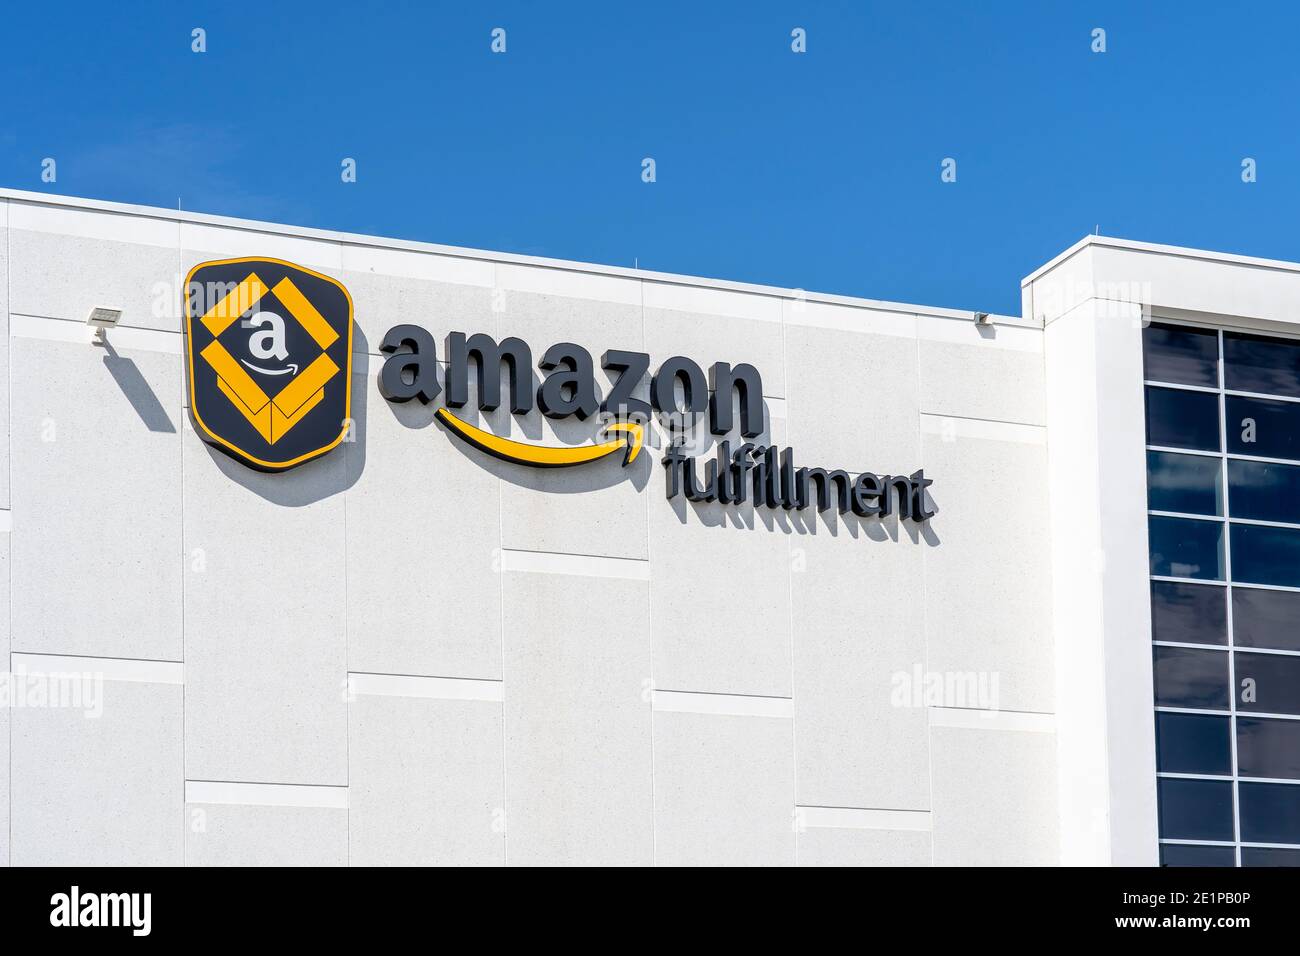 Brampton, ON, Canadá - 19 de septiembre de 2020: Primer plano del centro logístico de Amazon en el edificio de Brampton, ON, Canadá Foto de stock